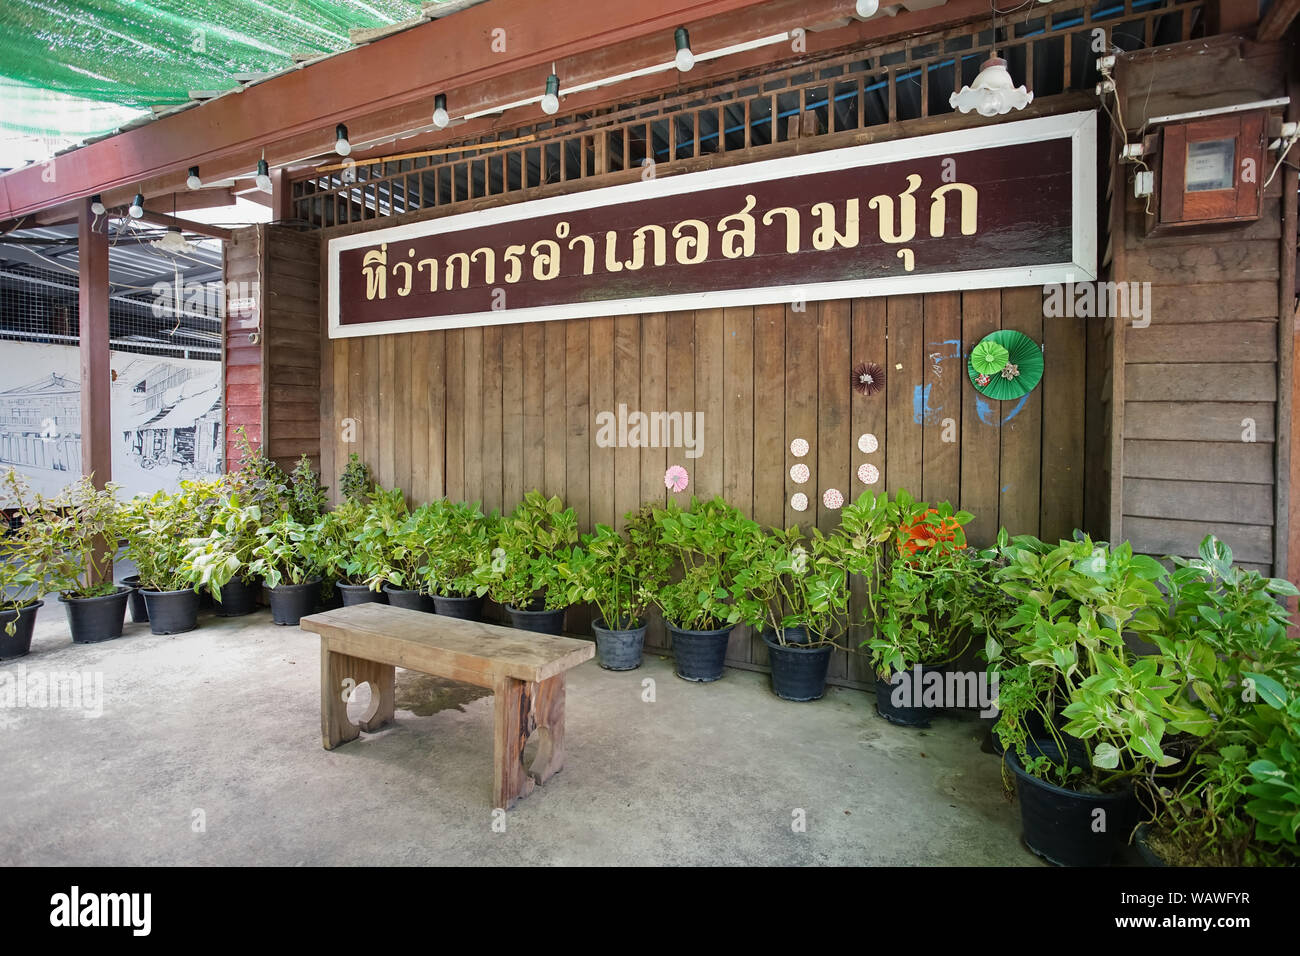 Suphan Buri, Thailand - 24. Mai, 2019: Der berühmte Reiseziel Sam Chuk alter Markt mit Thai Typenschild bedeutet Sam Chuk Bezirk. Stockfoto